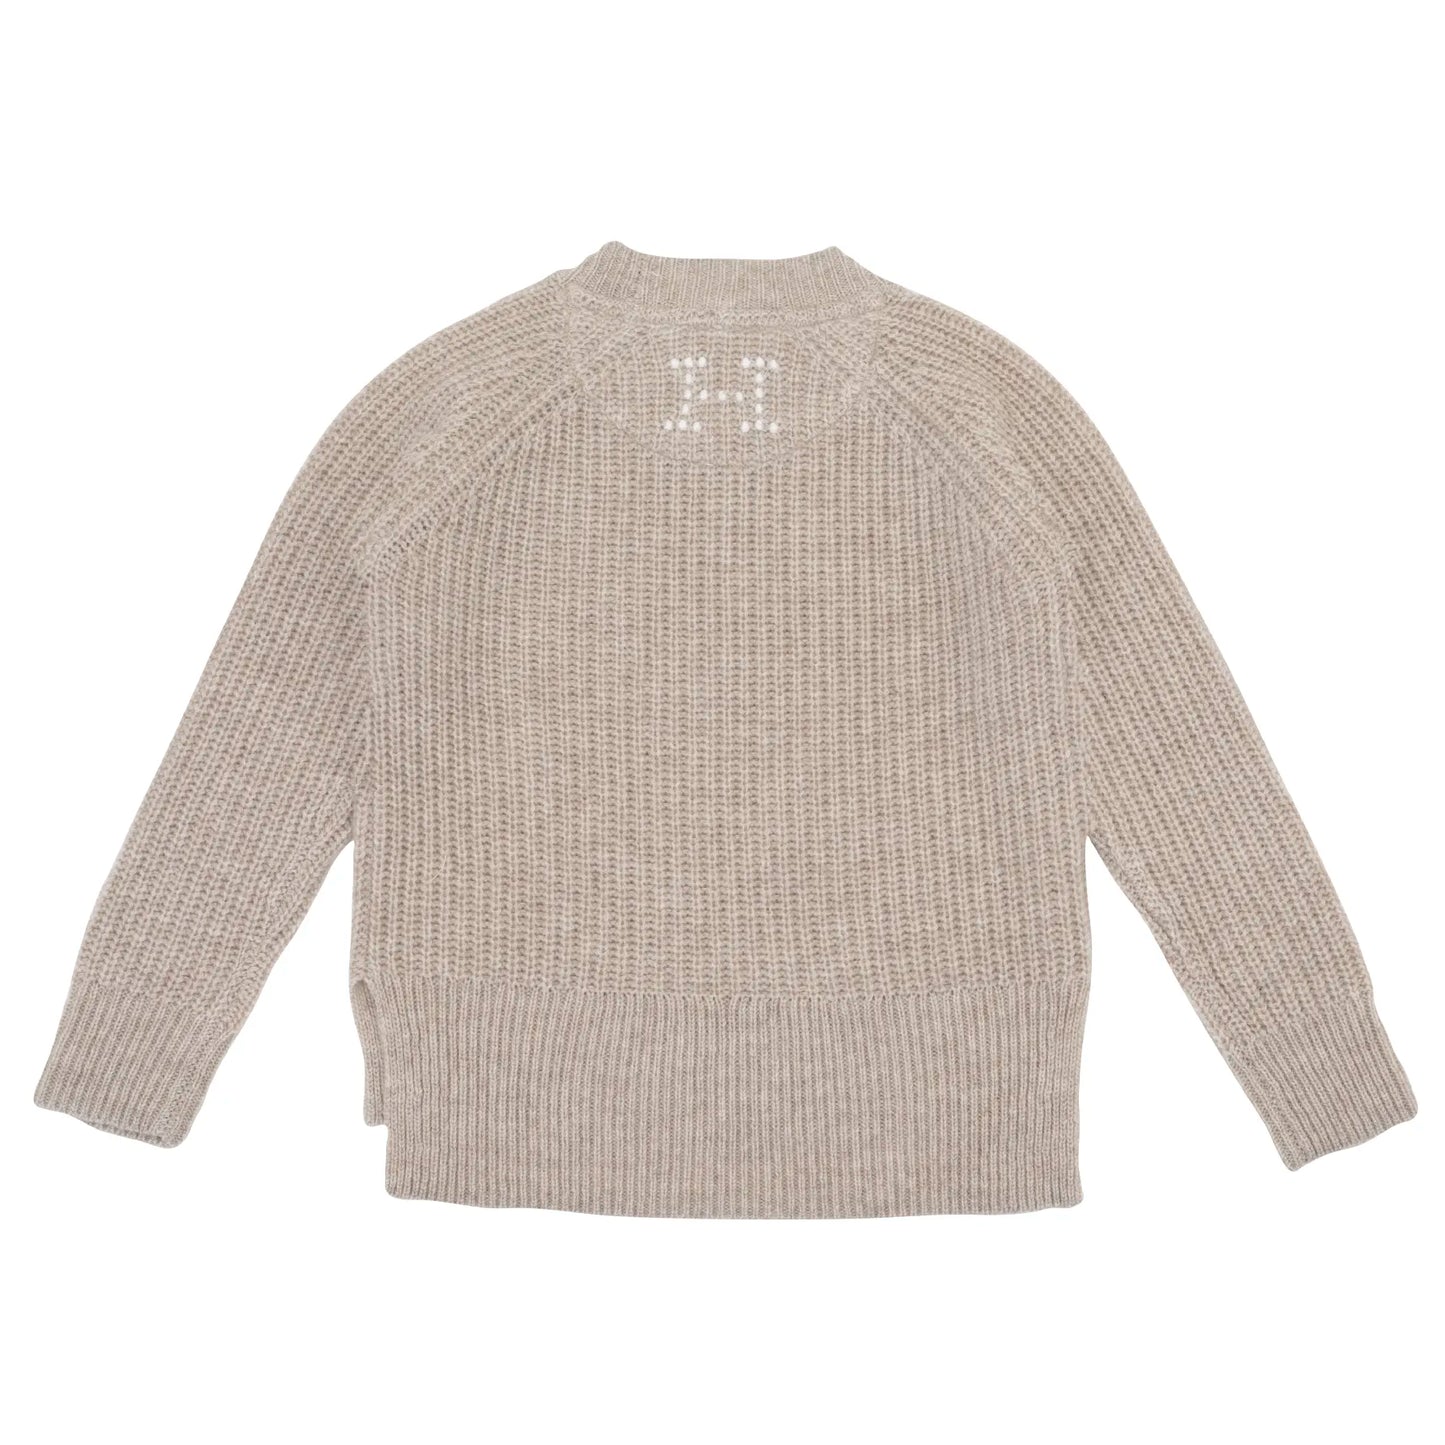 Holmm - Ellis sweater - Millet